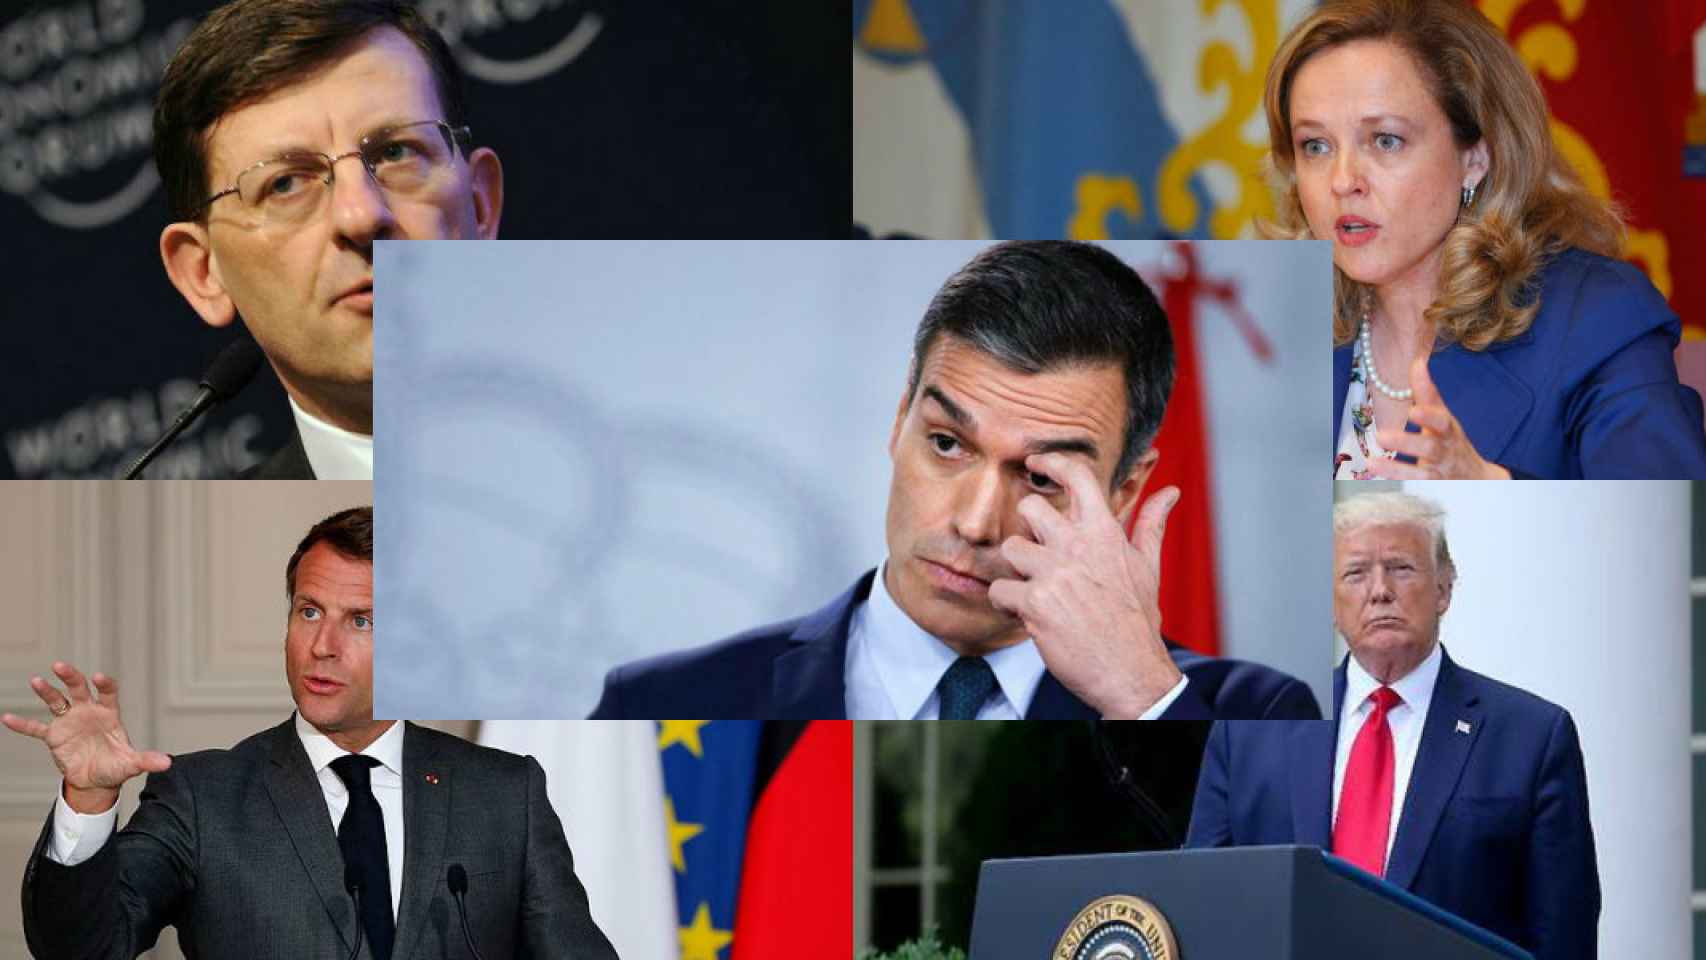 Vittorio Colao, Nadia Calviño, Pedro Sánchez, Emmanuel Macron y Donald Trump.